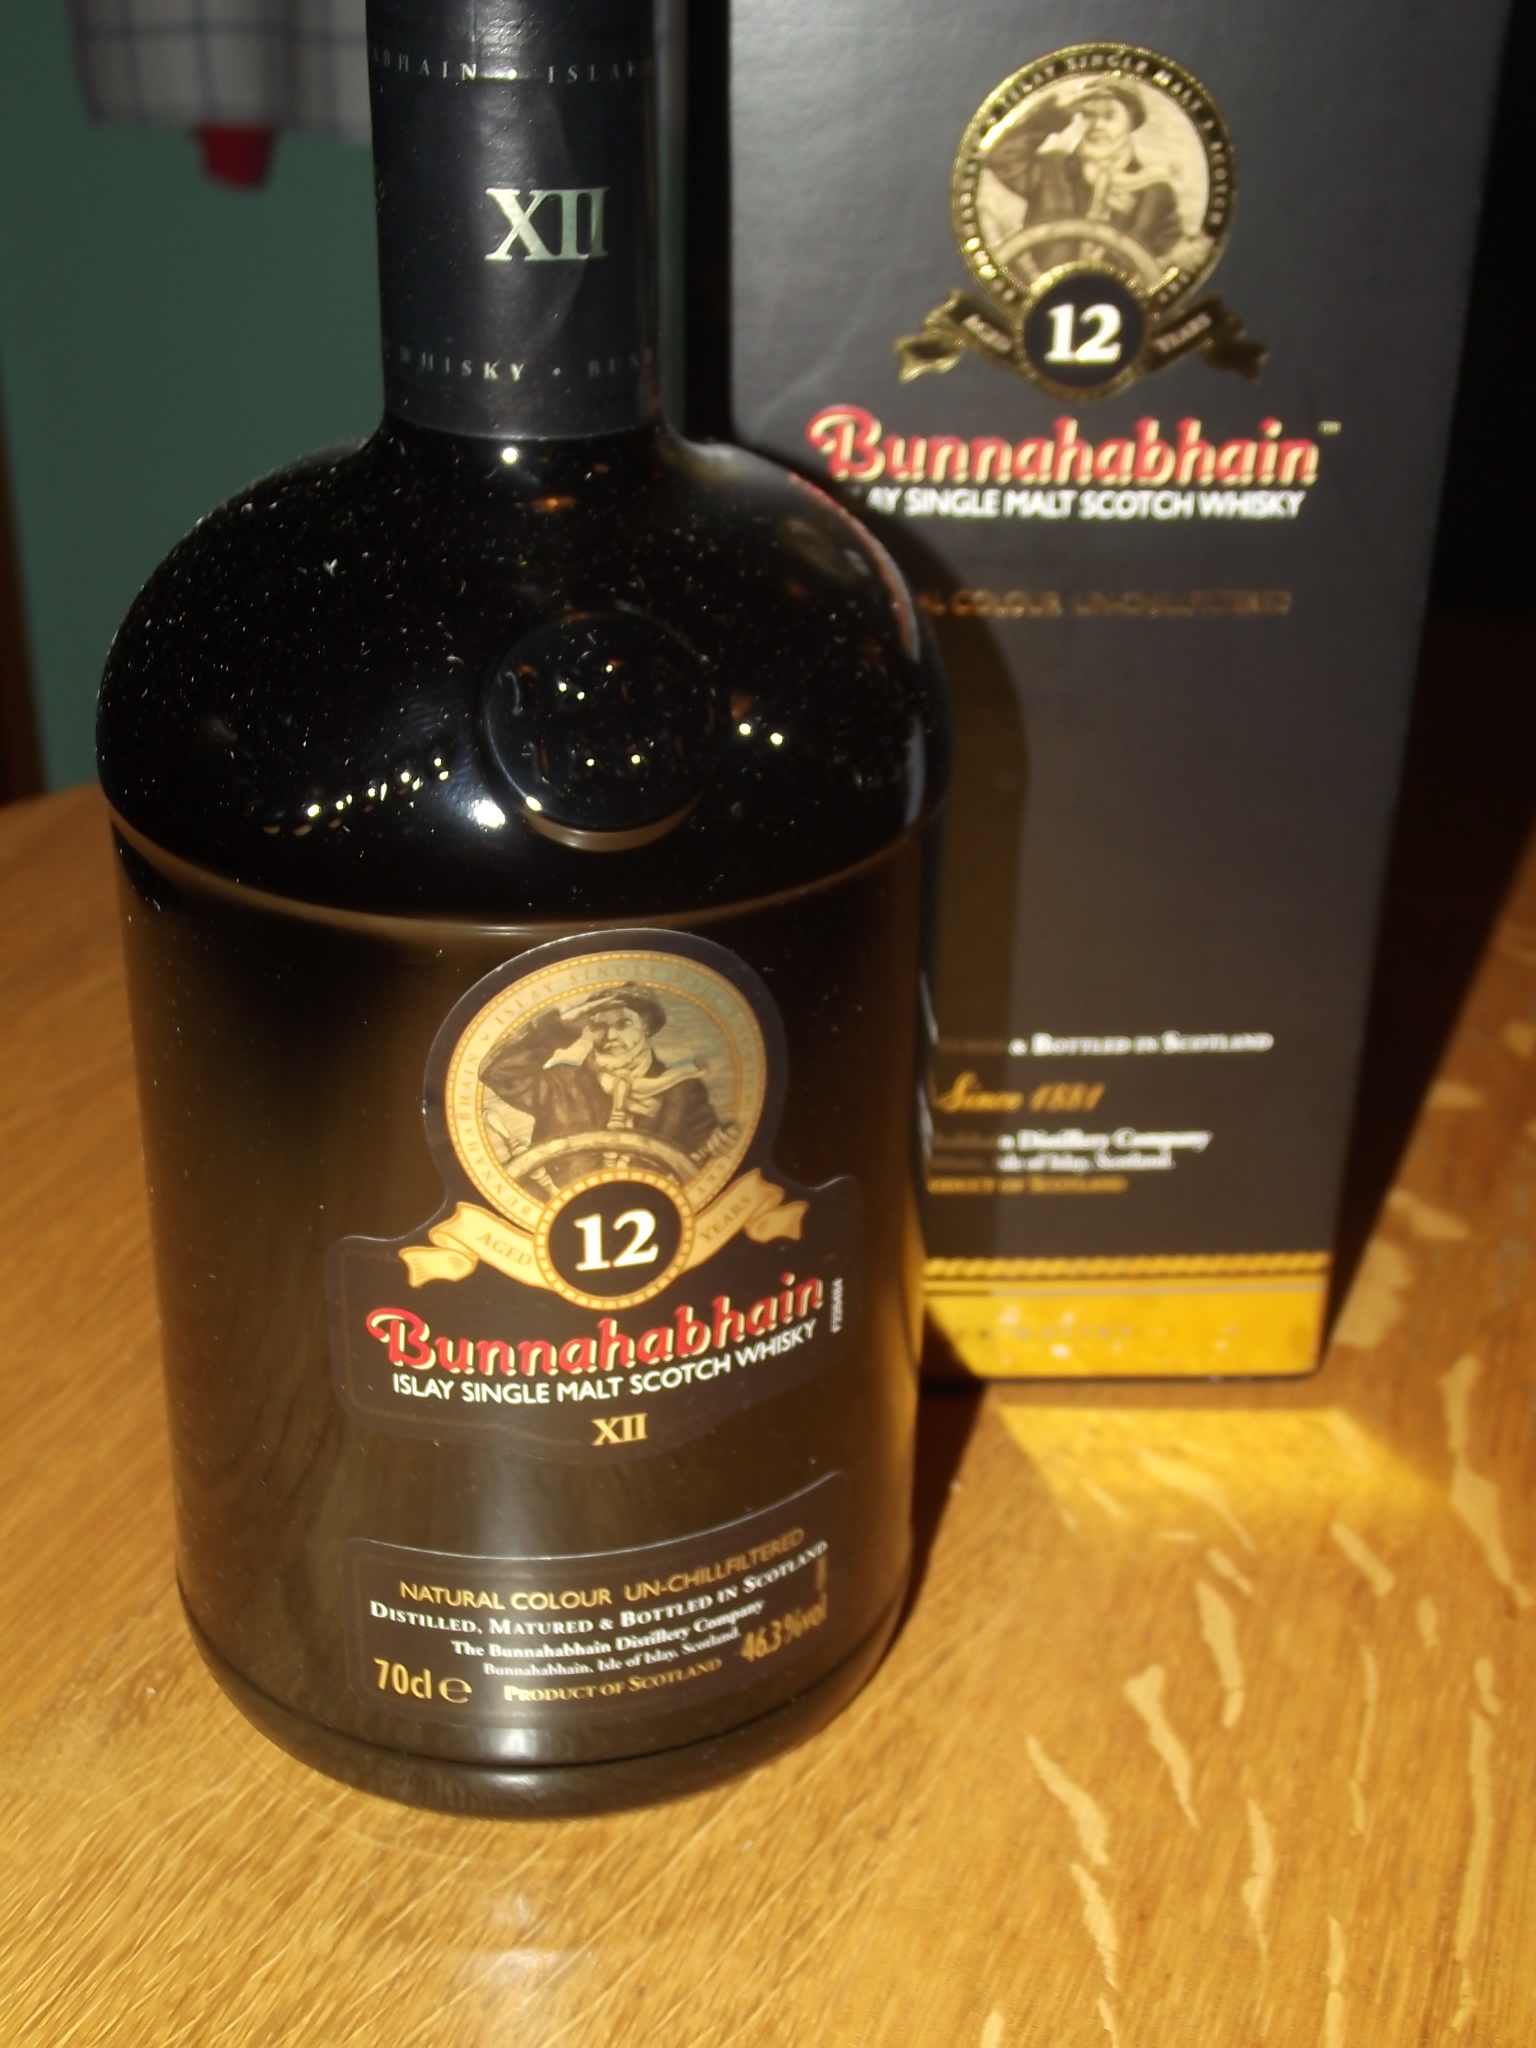 Bunnahabhain 12 yo 0,7 l   (32,90 EUR)
Von der Insel Islay kommt er und hat 12 Jahre im Fass verbracht. ... Der Whisky schmeckt leicht torfig leicht nach Sherry